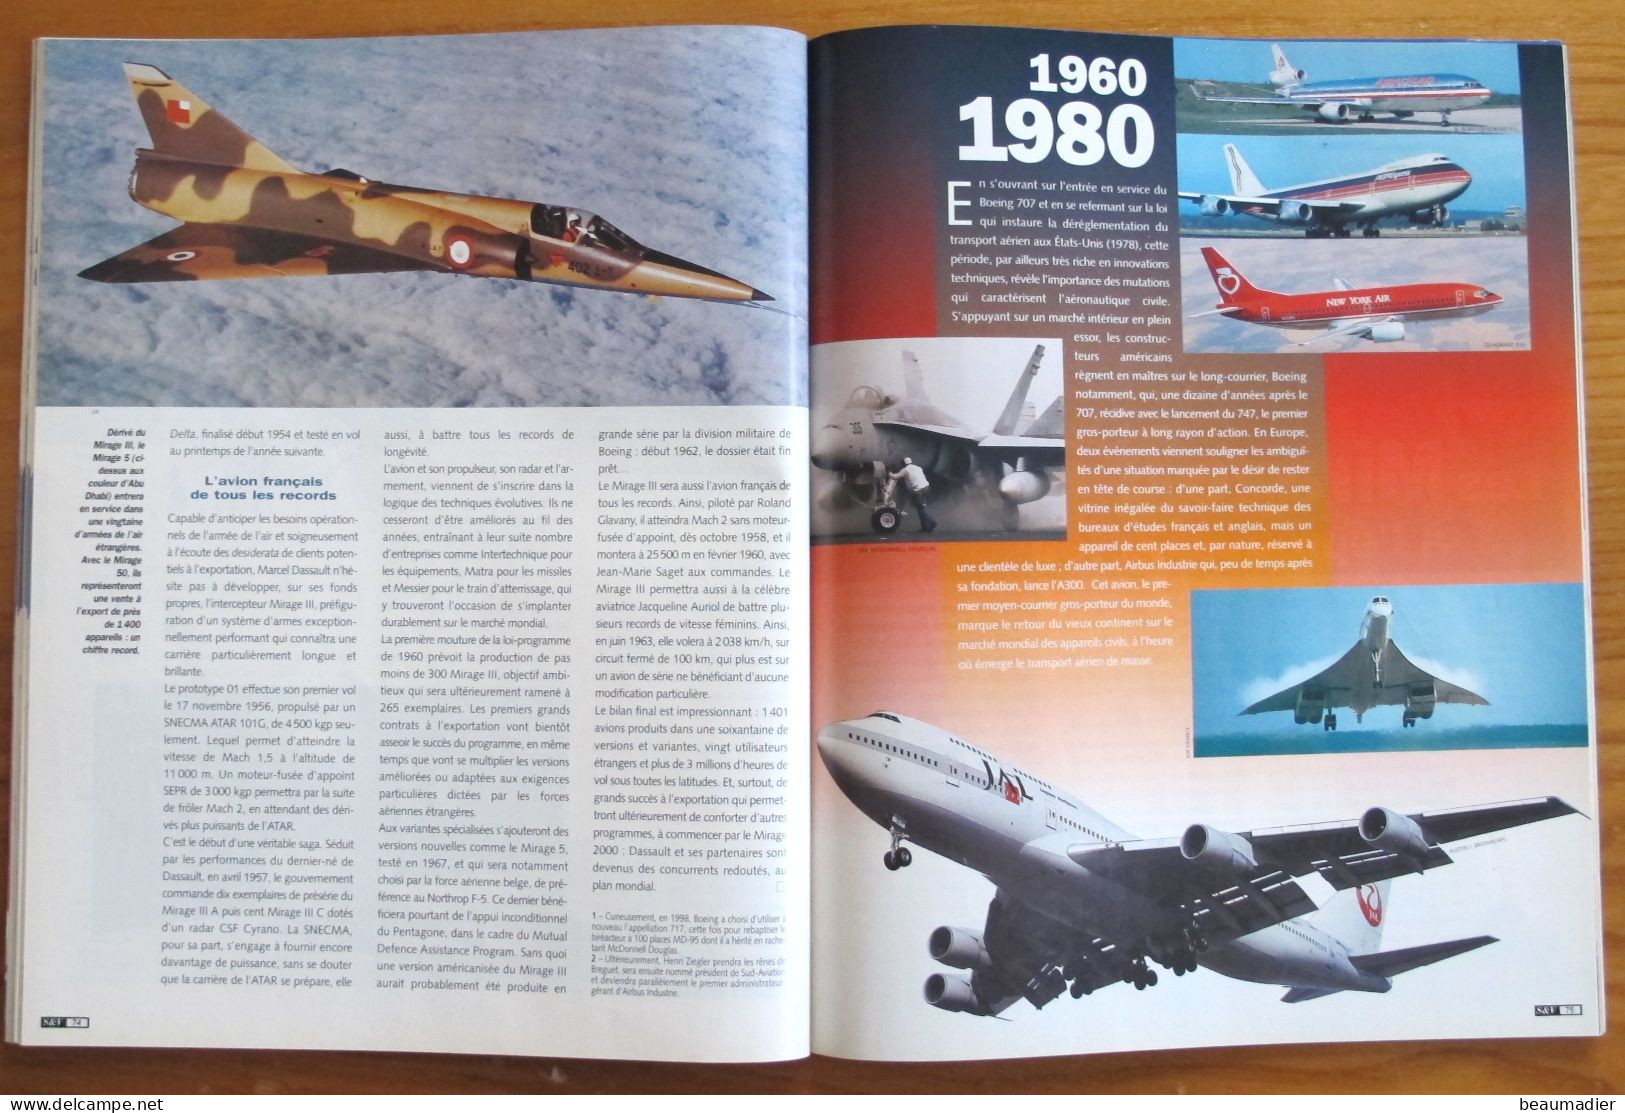 Science Et Vie édition Spéciale Un Siècle D'Aviation Août - Septembre 1998 Airbus Boeing Blériot Constellation - Aviation